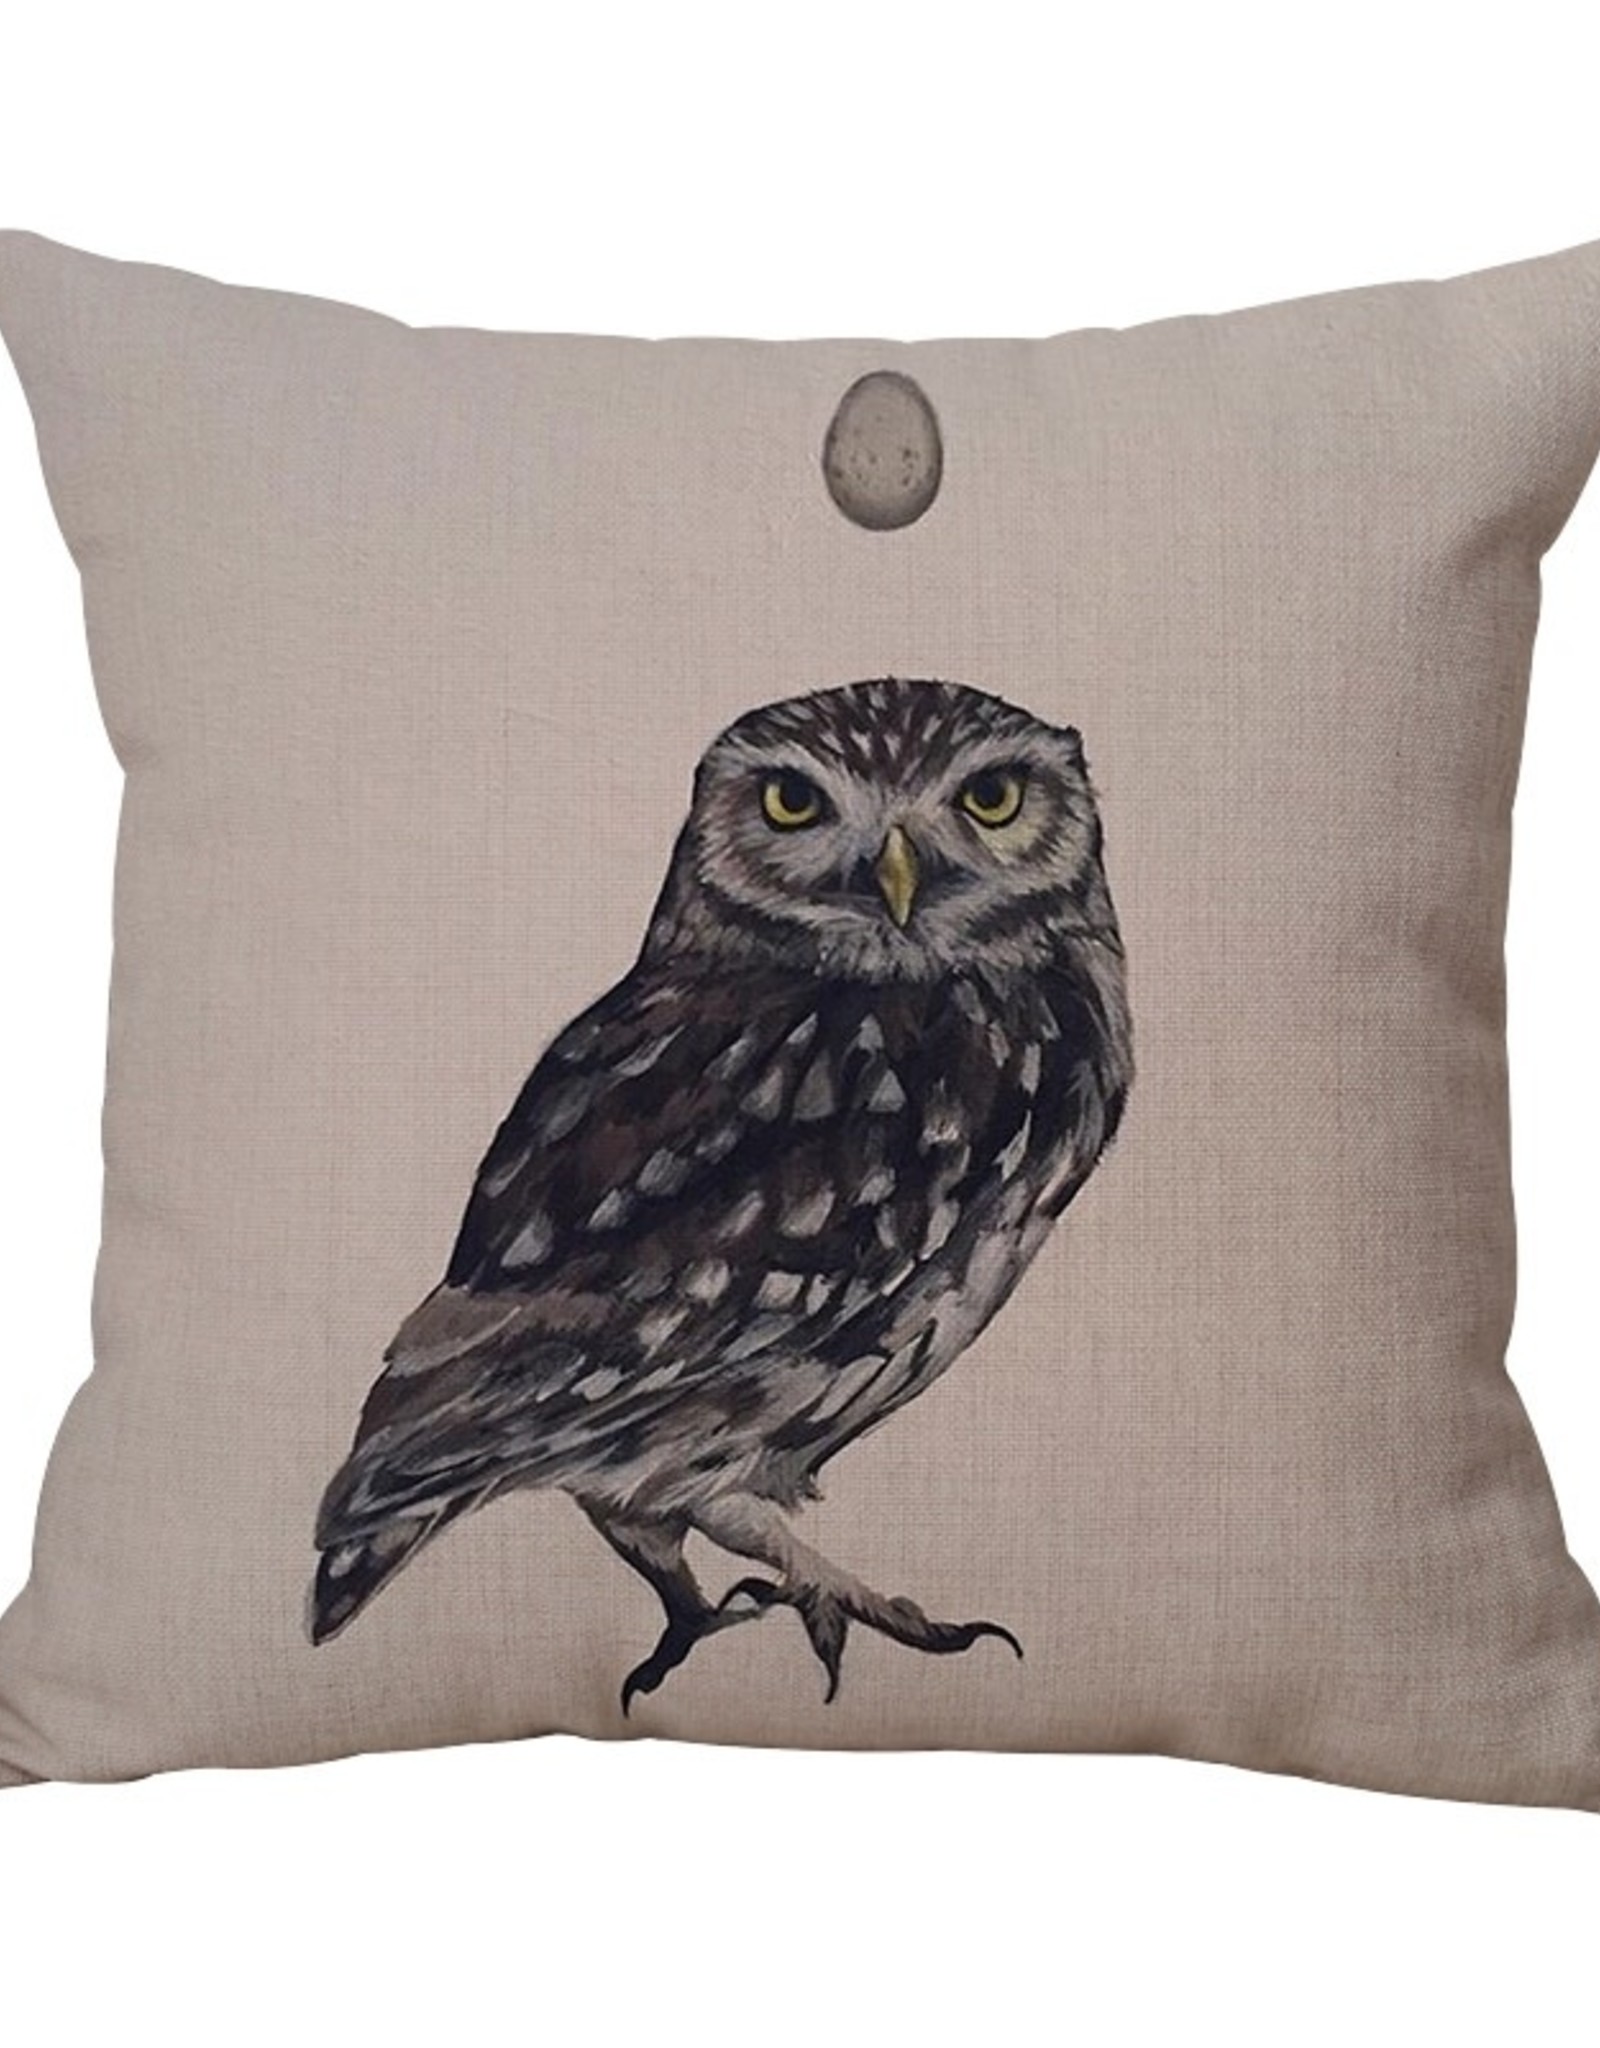 Still & Silent Pillow  - Owl